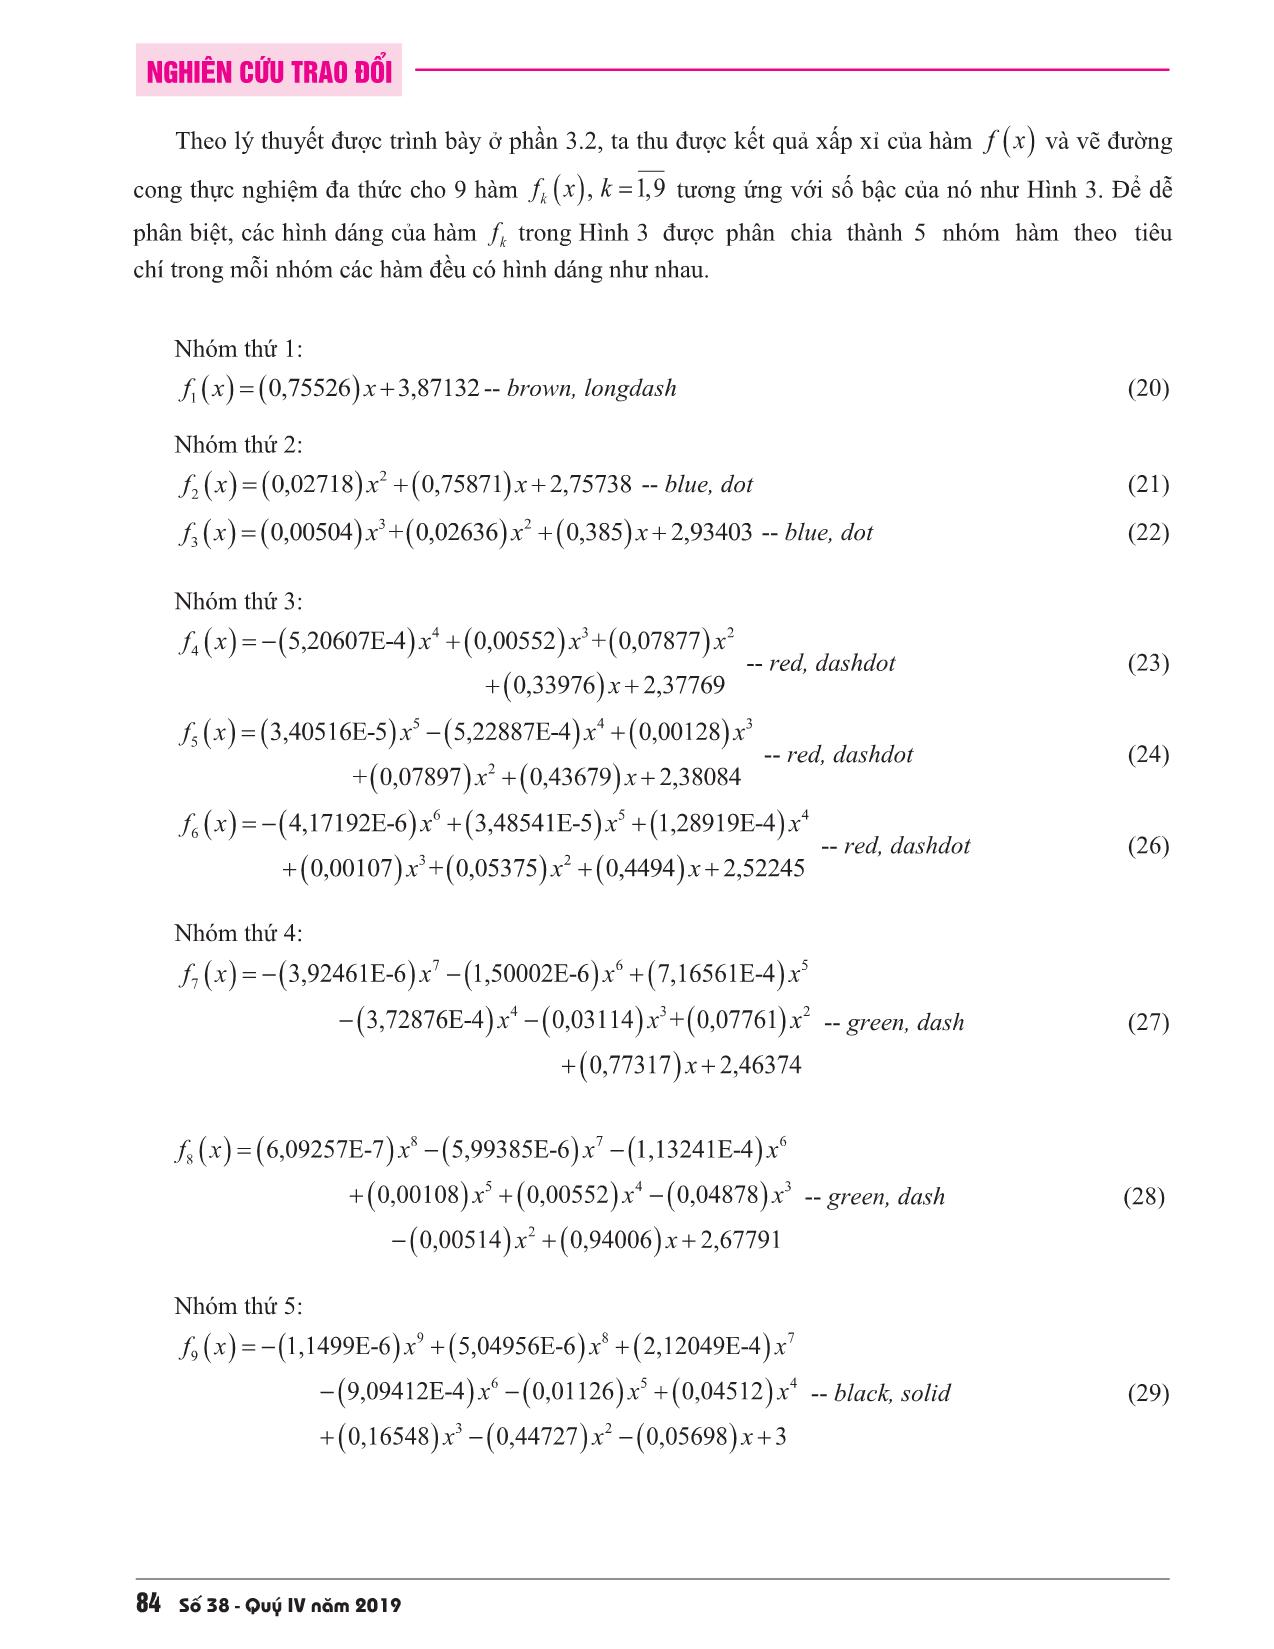 Khử Gauss-Jordan với vẽ đường cong thực nghiệm đa thức trang 7